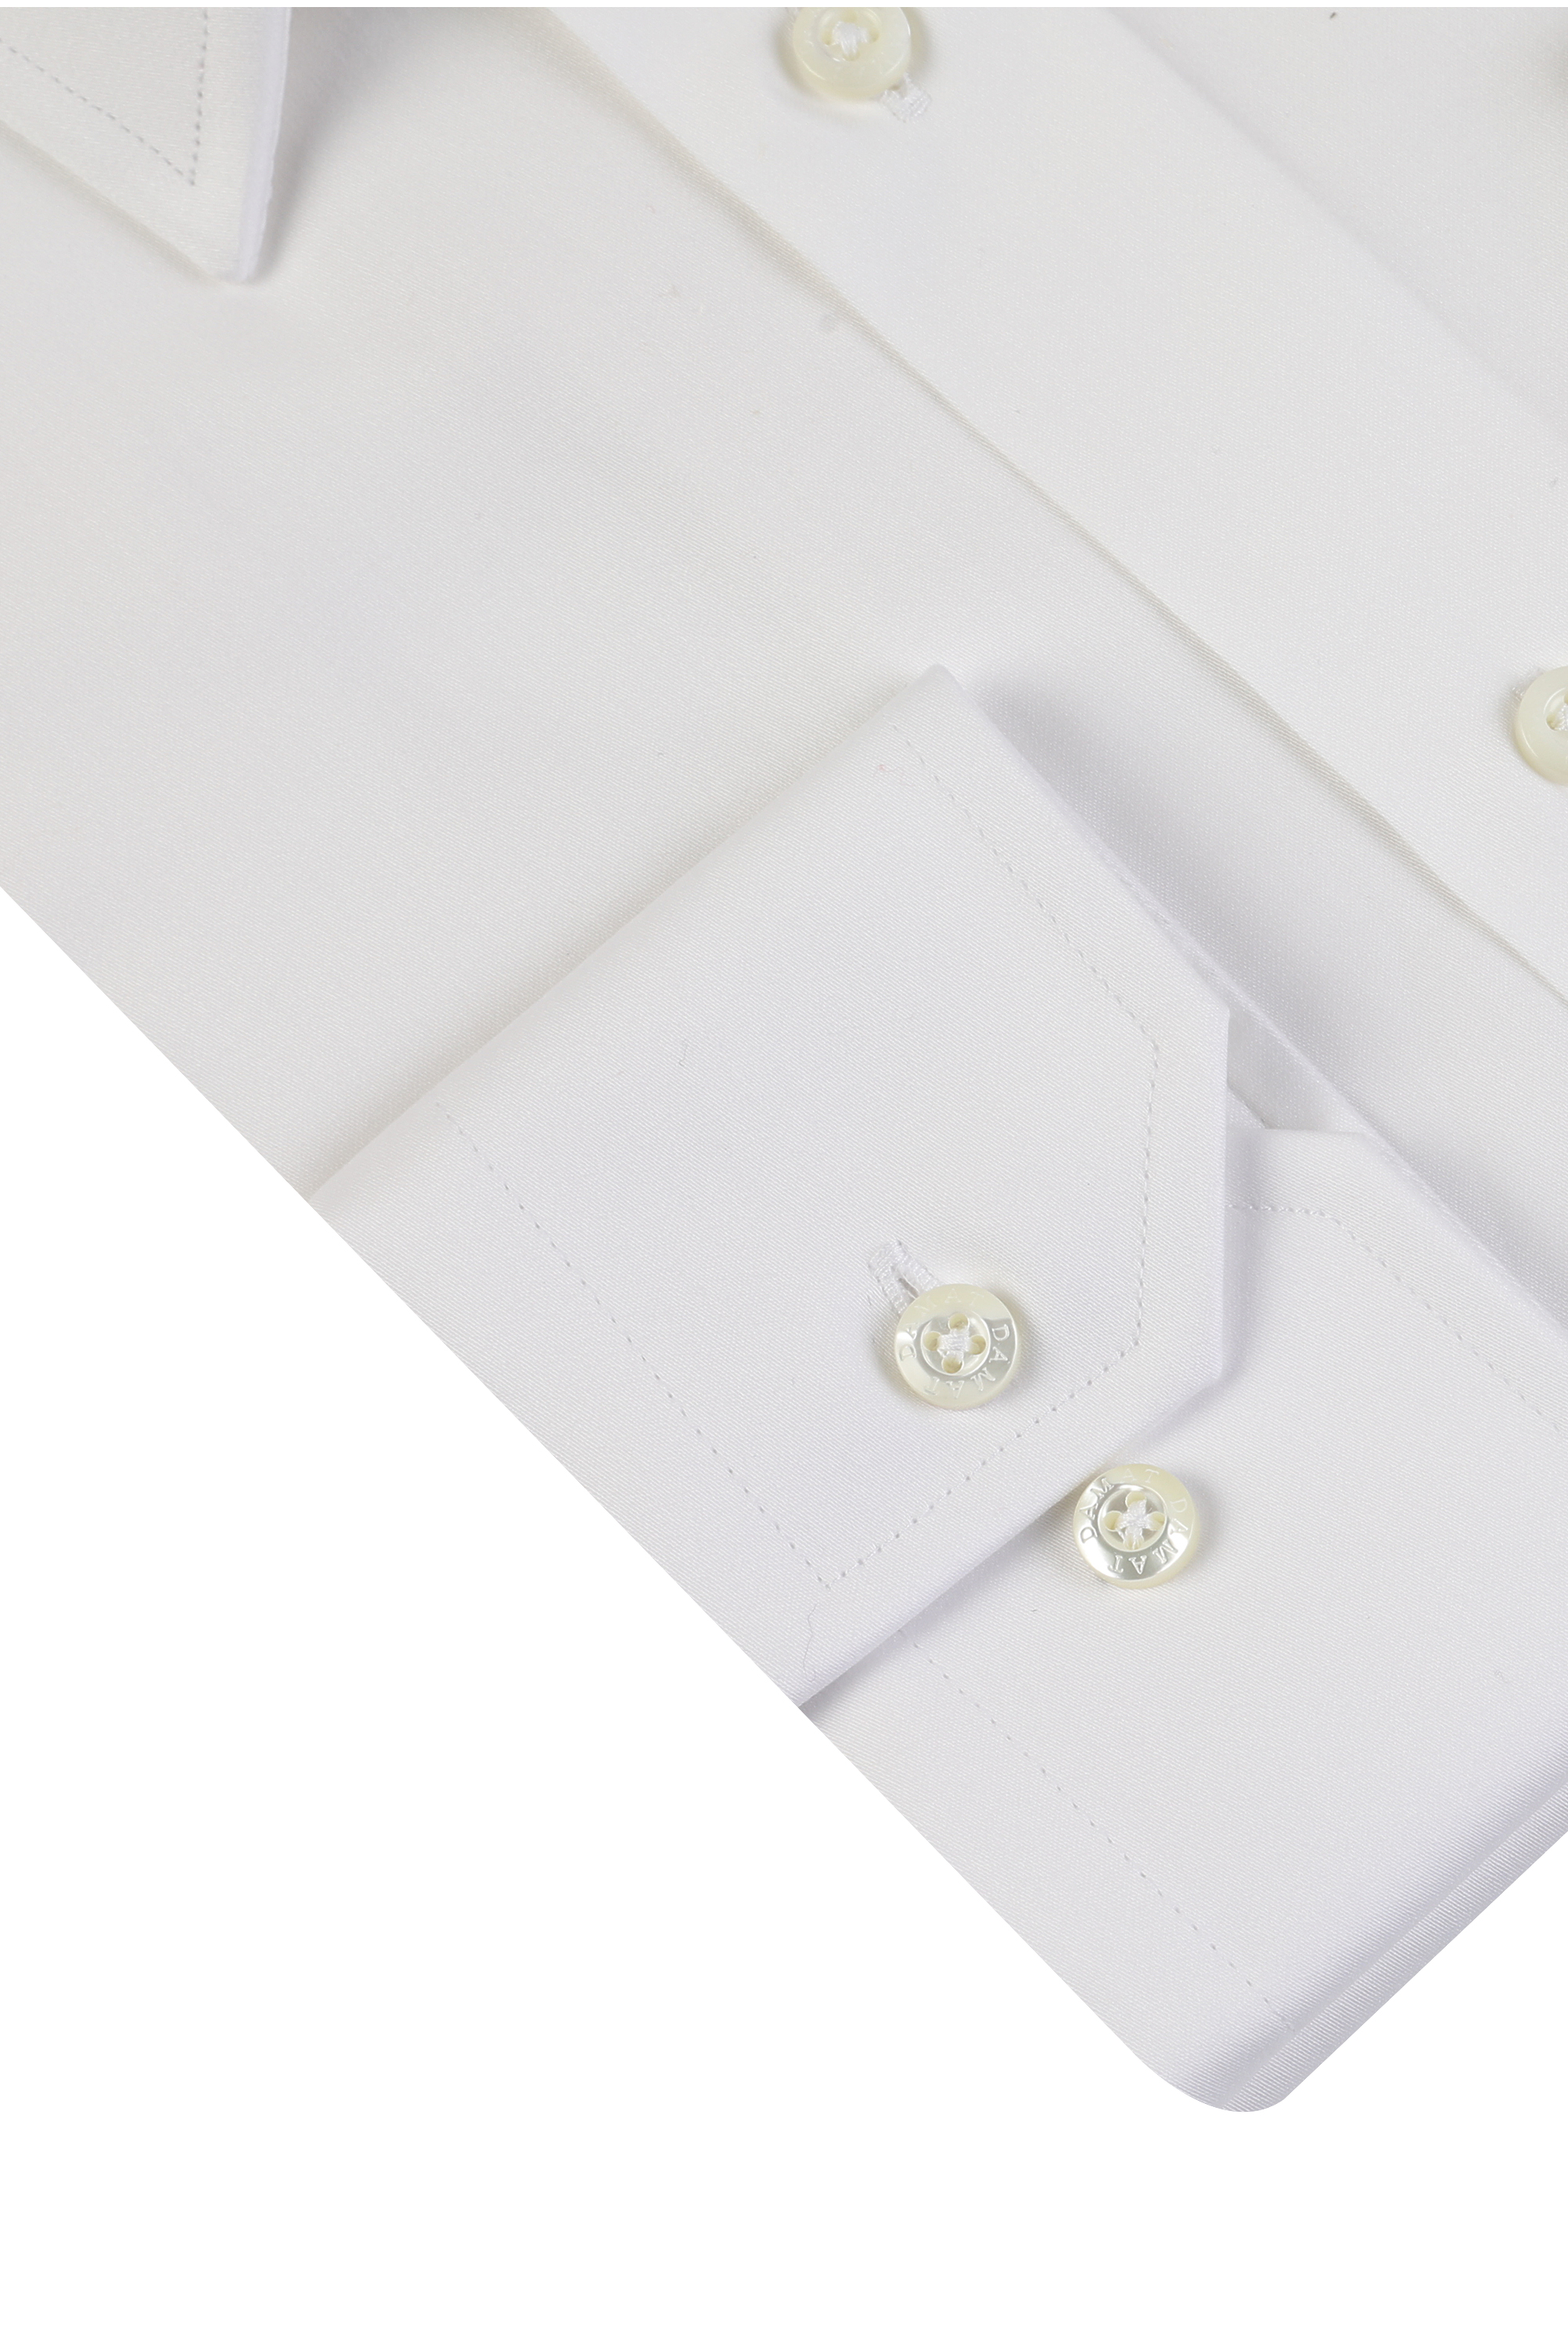 Damat Tween Damat Slim Fit Beyaz Düz Nano Care Gömlek. 1